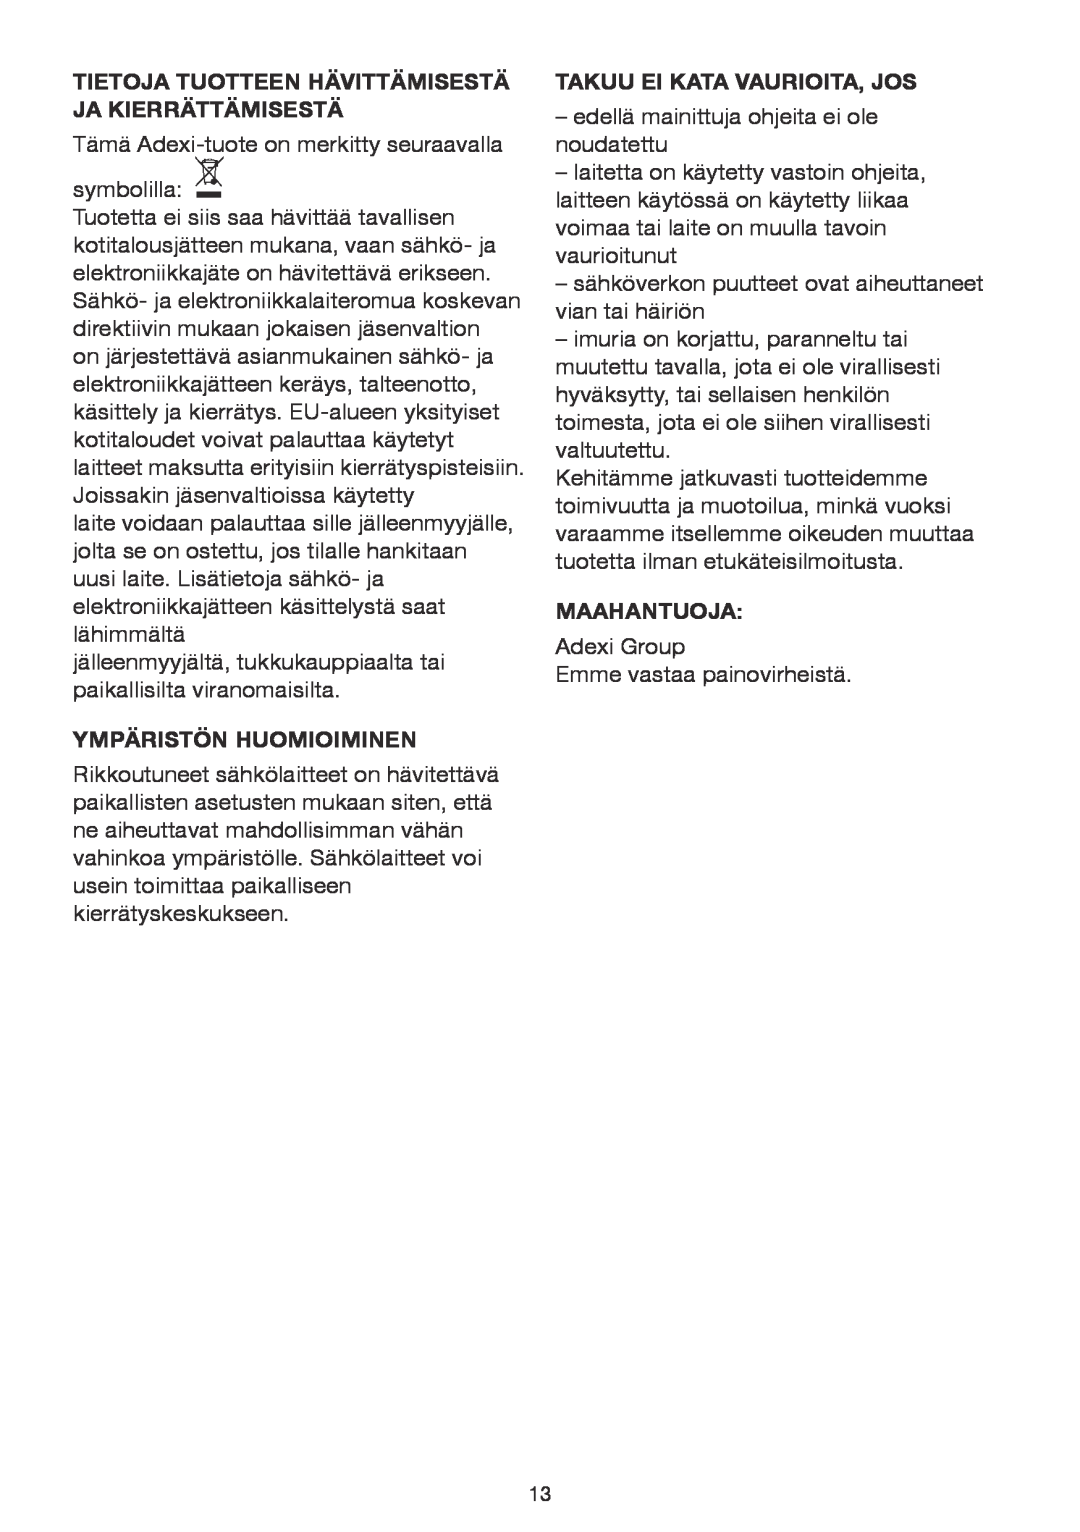 Melissa 640-074 manual Ympäristön Huomioiminen, Takuu Ei Kata Vaurioita, Jos, Maahantuoja 